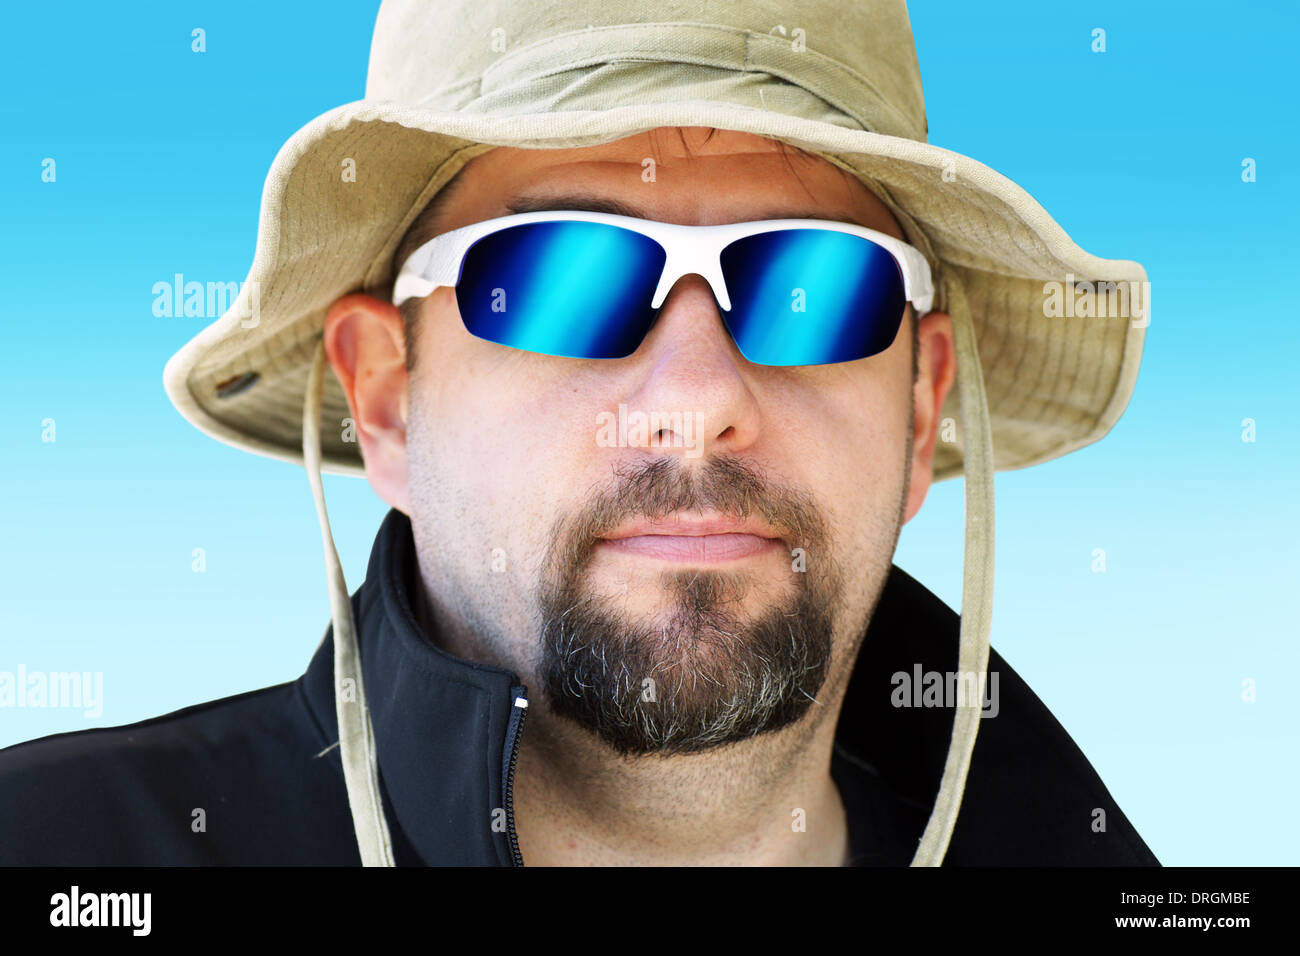 Porträt eines Mannes während Outdoor-Expedition mit Sonne Hut und Spiegel Sonnenbrille Stockfoto